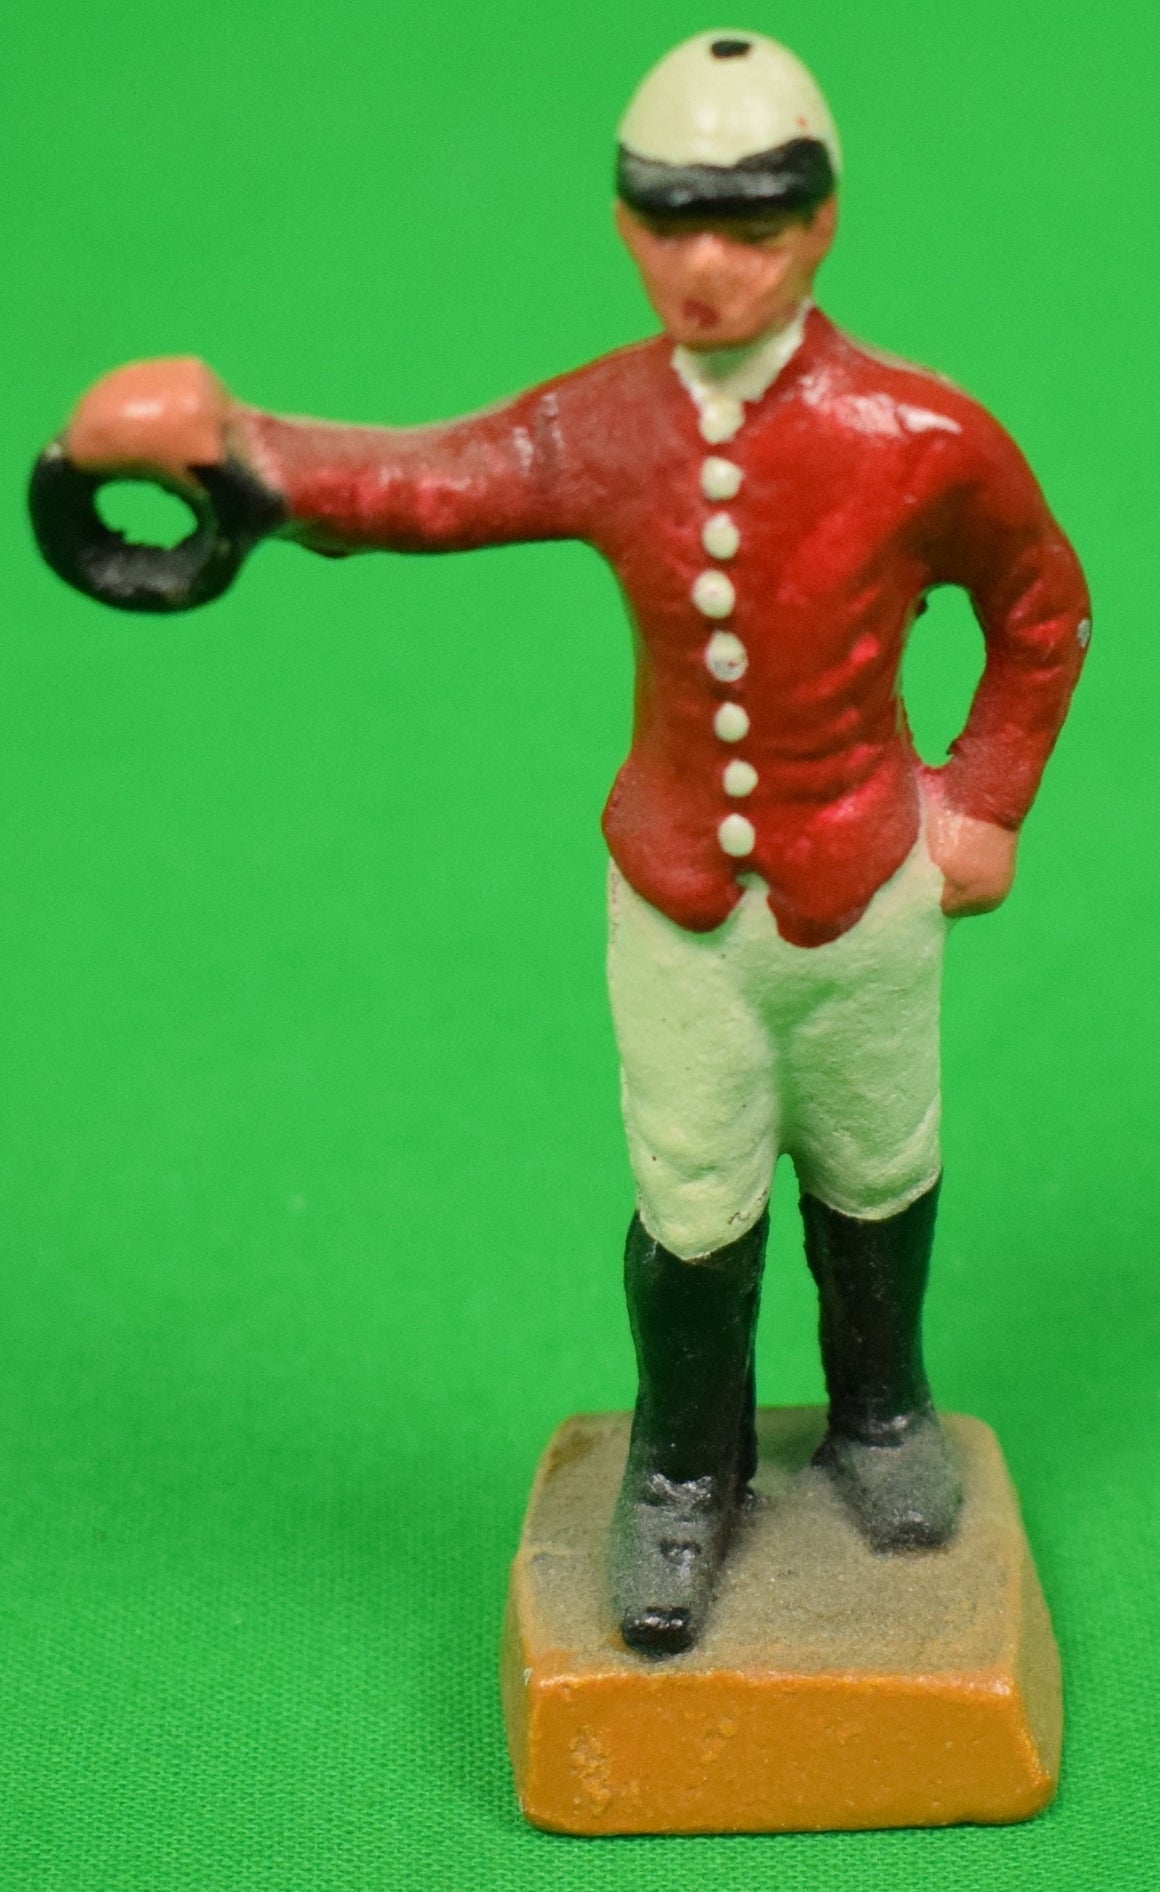 "21" Club Miniature Red Jockey"